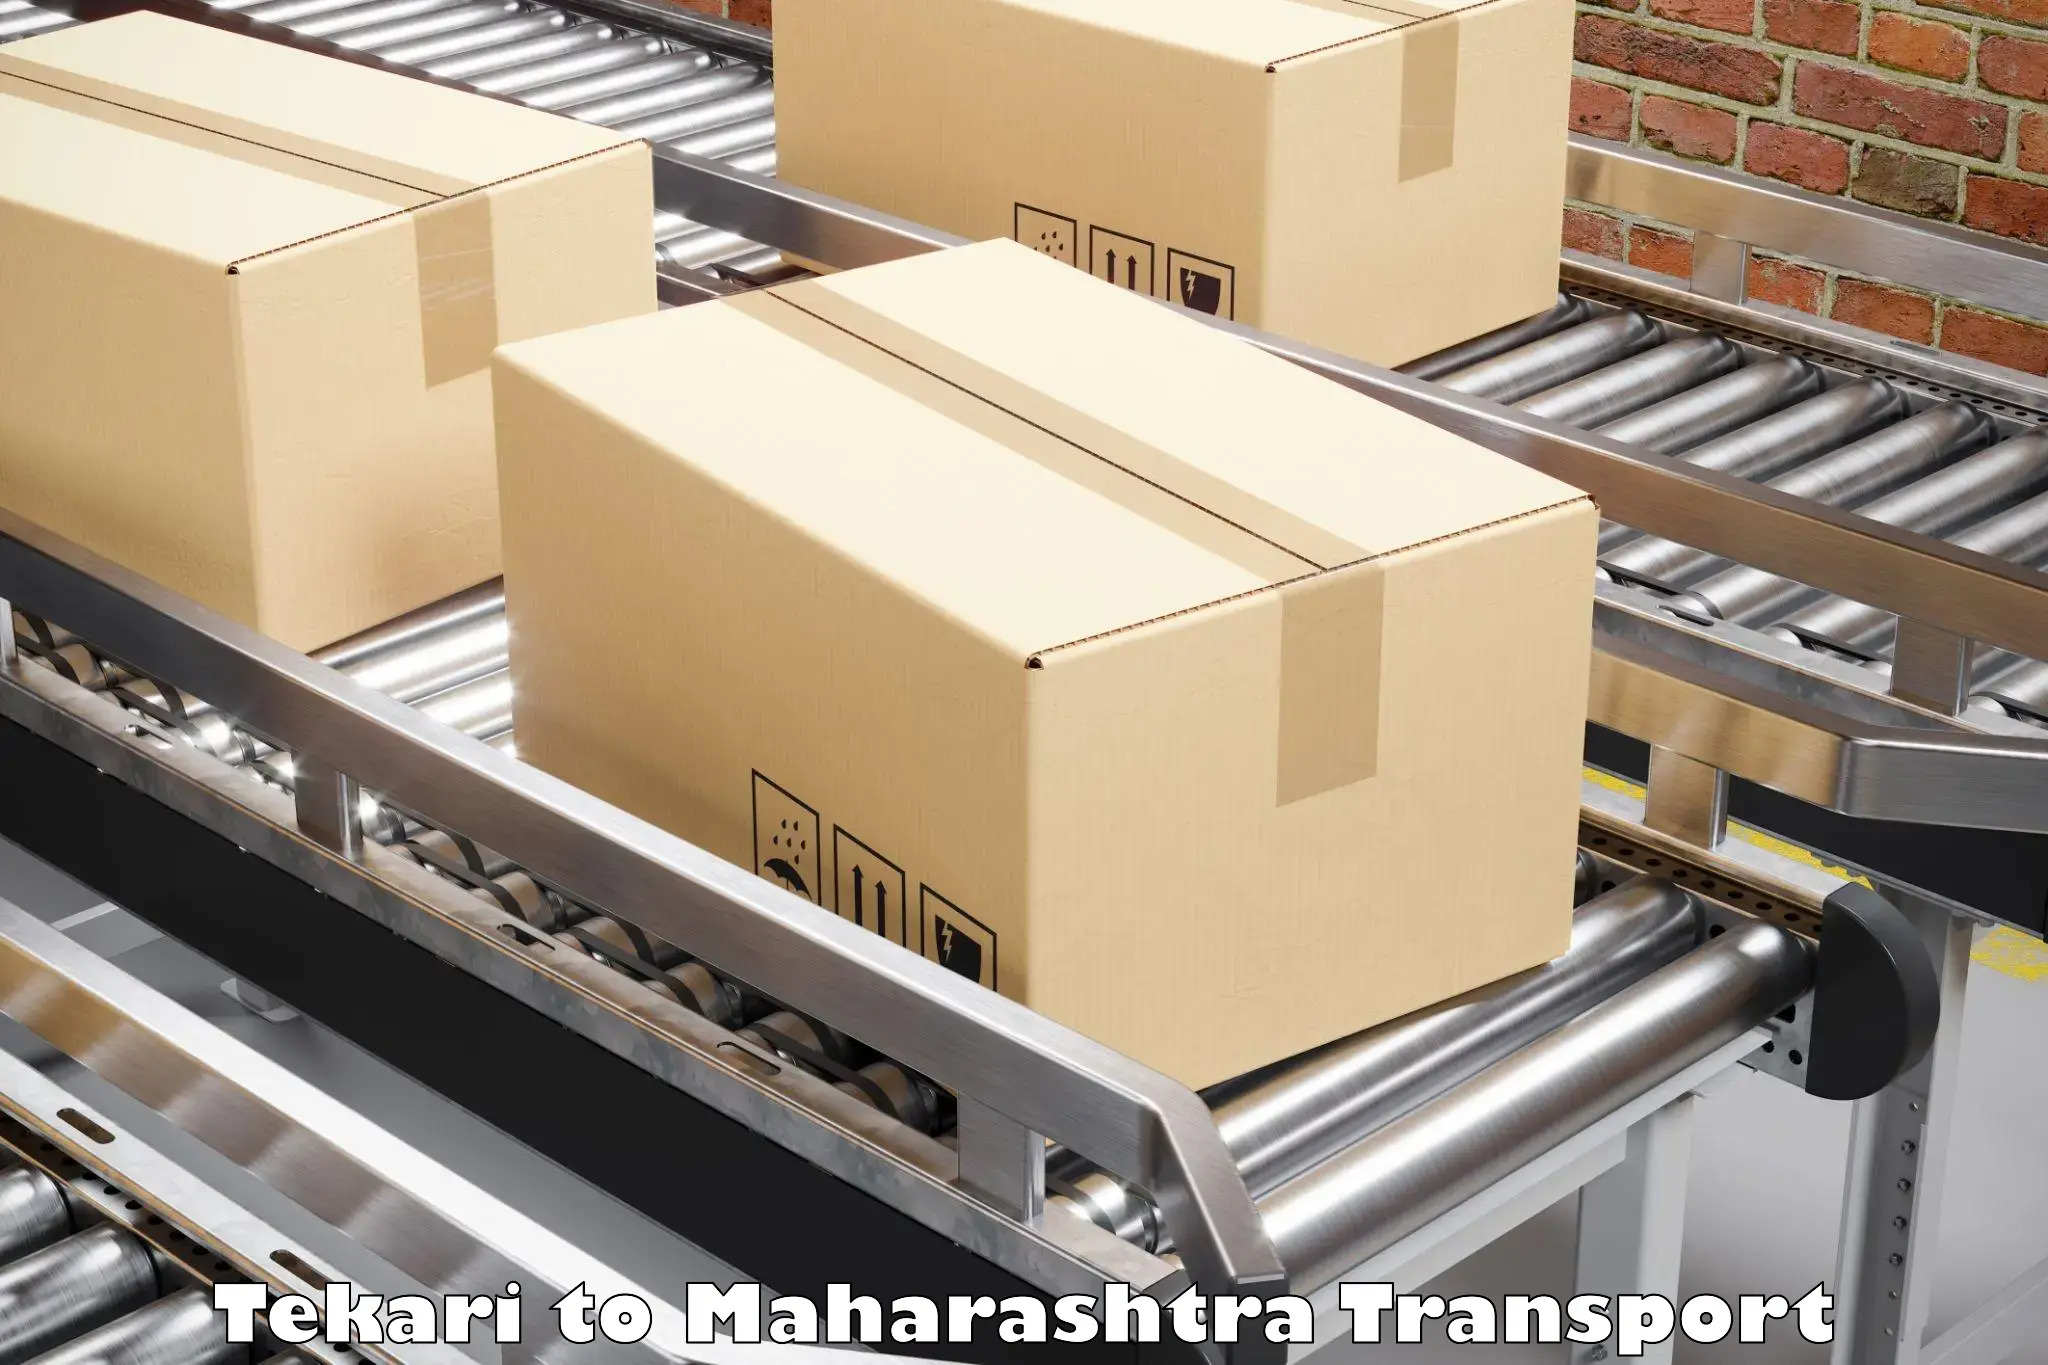 Online transport service Tekari to Maharashtra